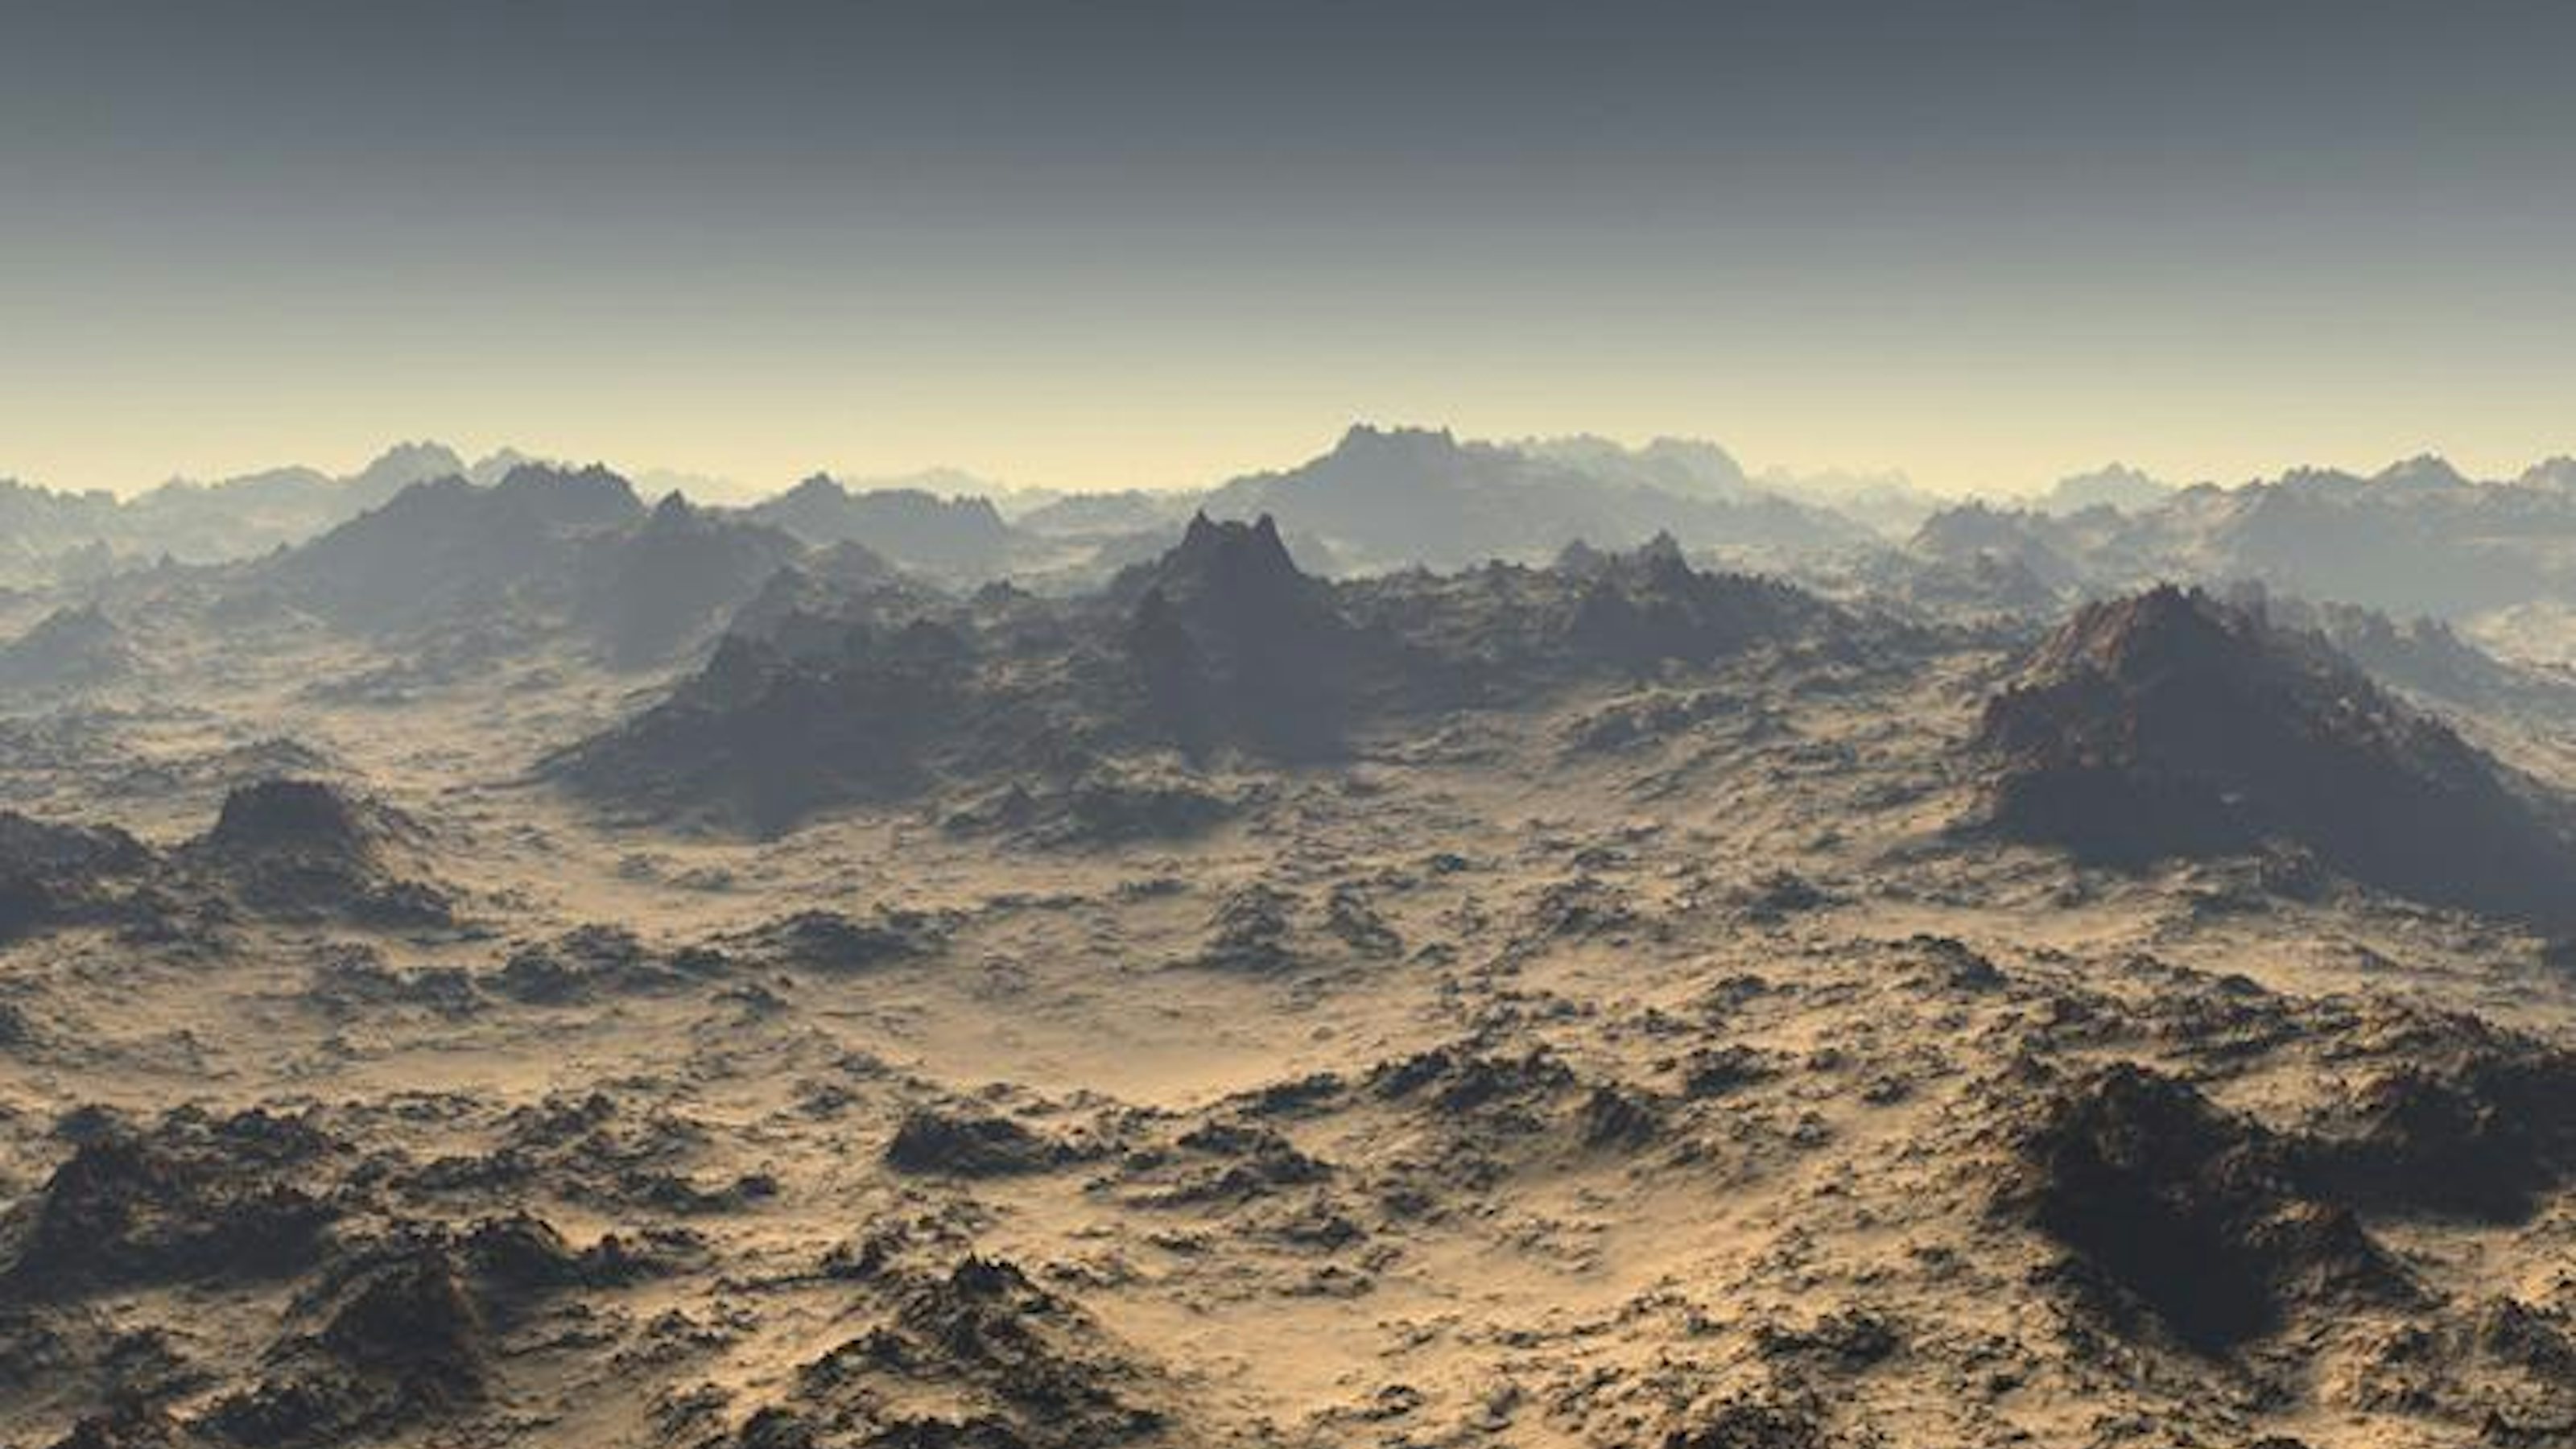 Desert planet